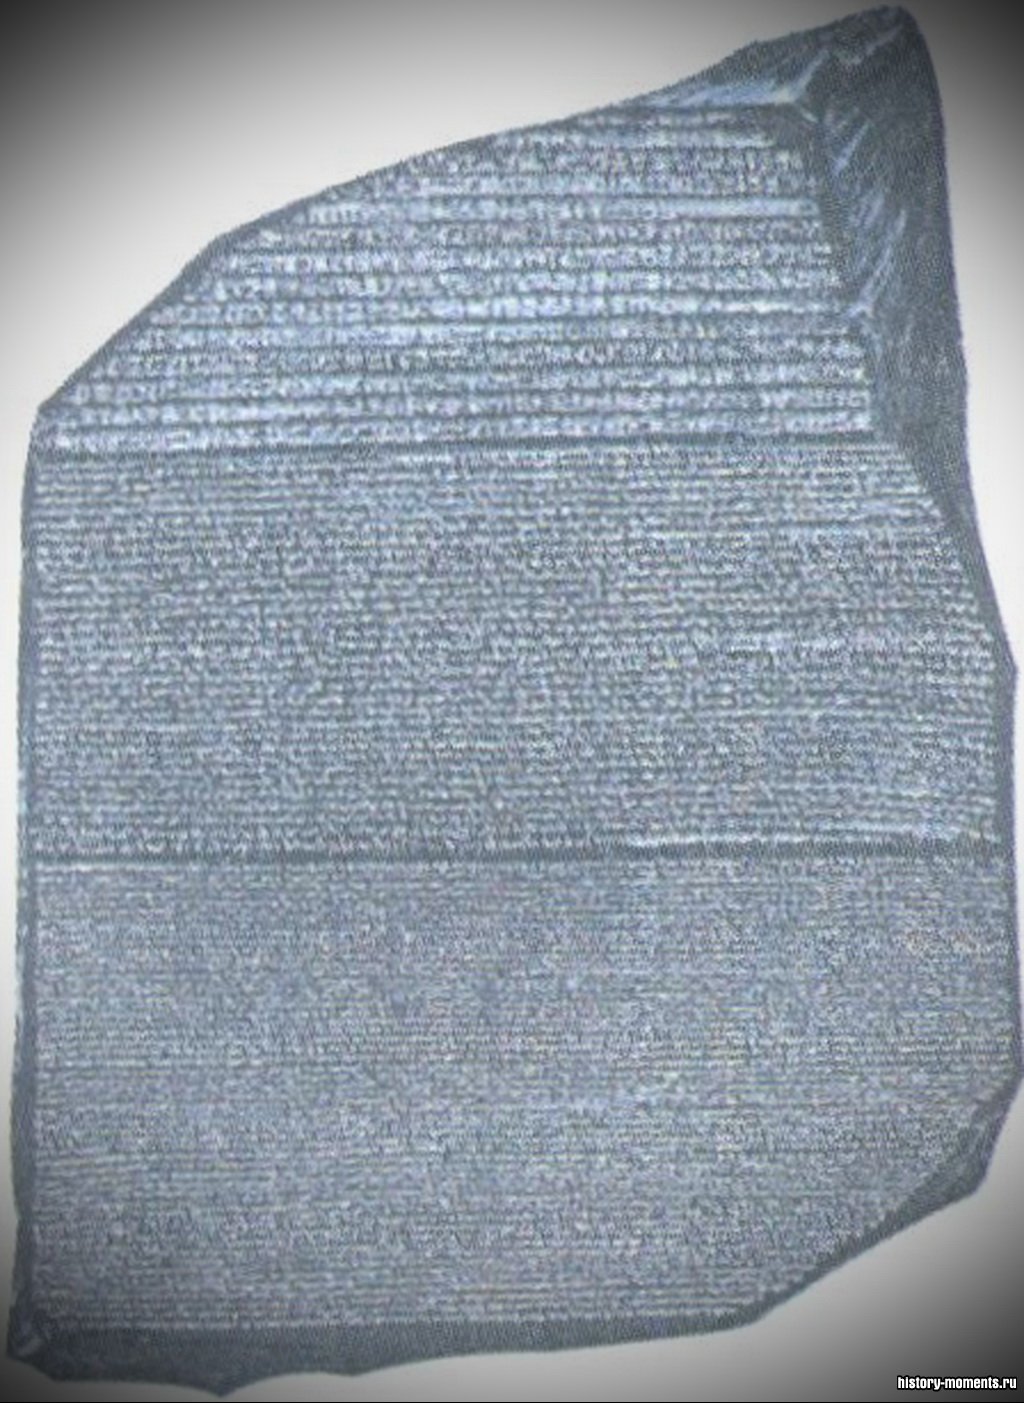 Розеттский камень помог историкам прочитать египетские иероглифы. Текст на нем был записан иероглифами, греческим и коптским (создан в Египте) алфавитами.